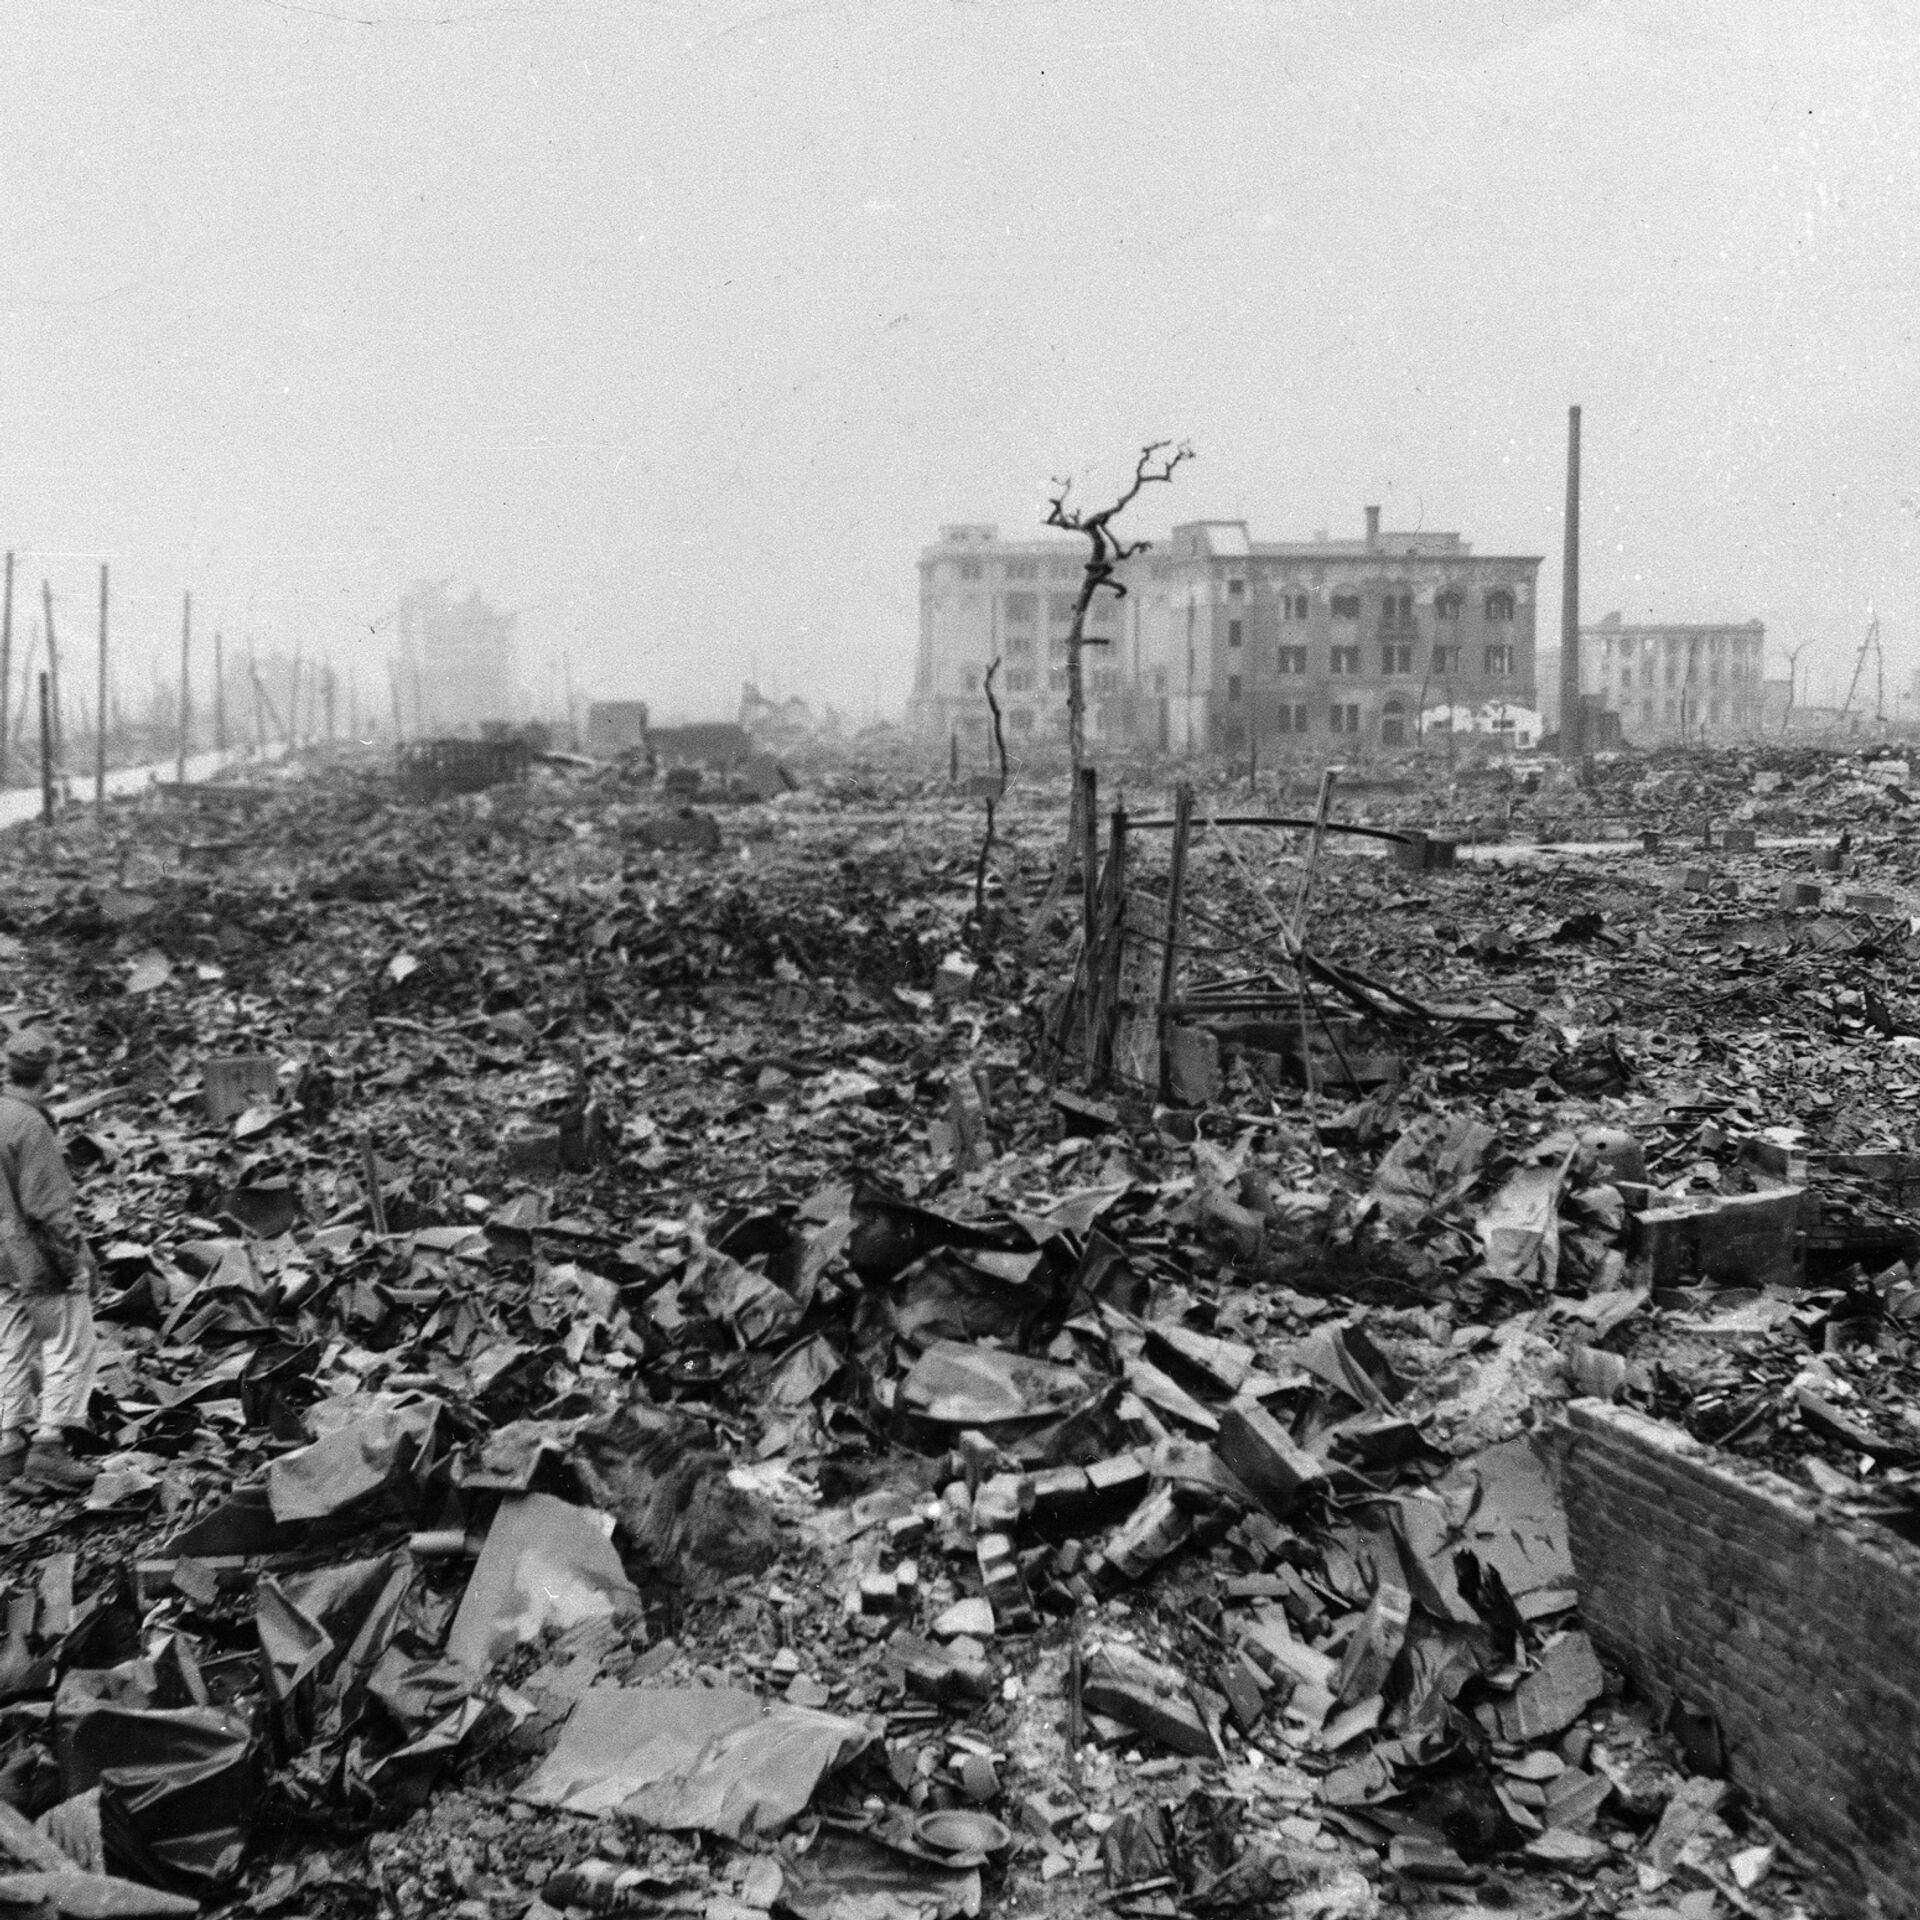 Причины угрозы ядерной войны. Город после ядерного взрыва. 20 Век Хиросима 6 августа. Фотоснимки после ядерной войны.